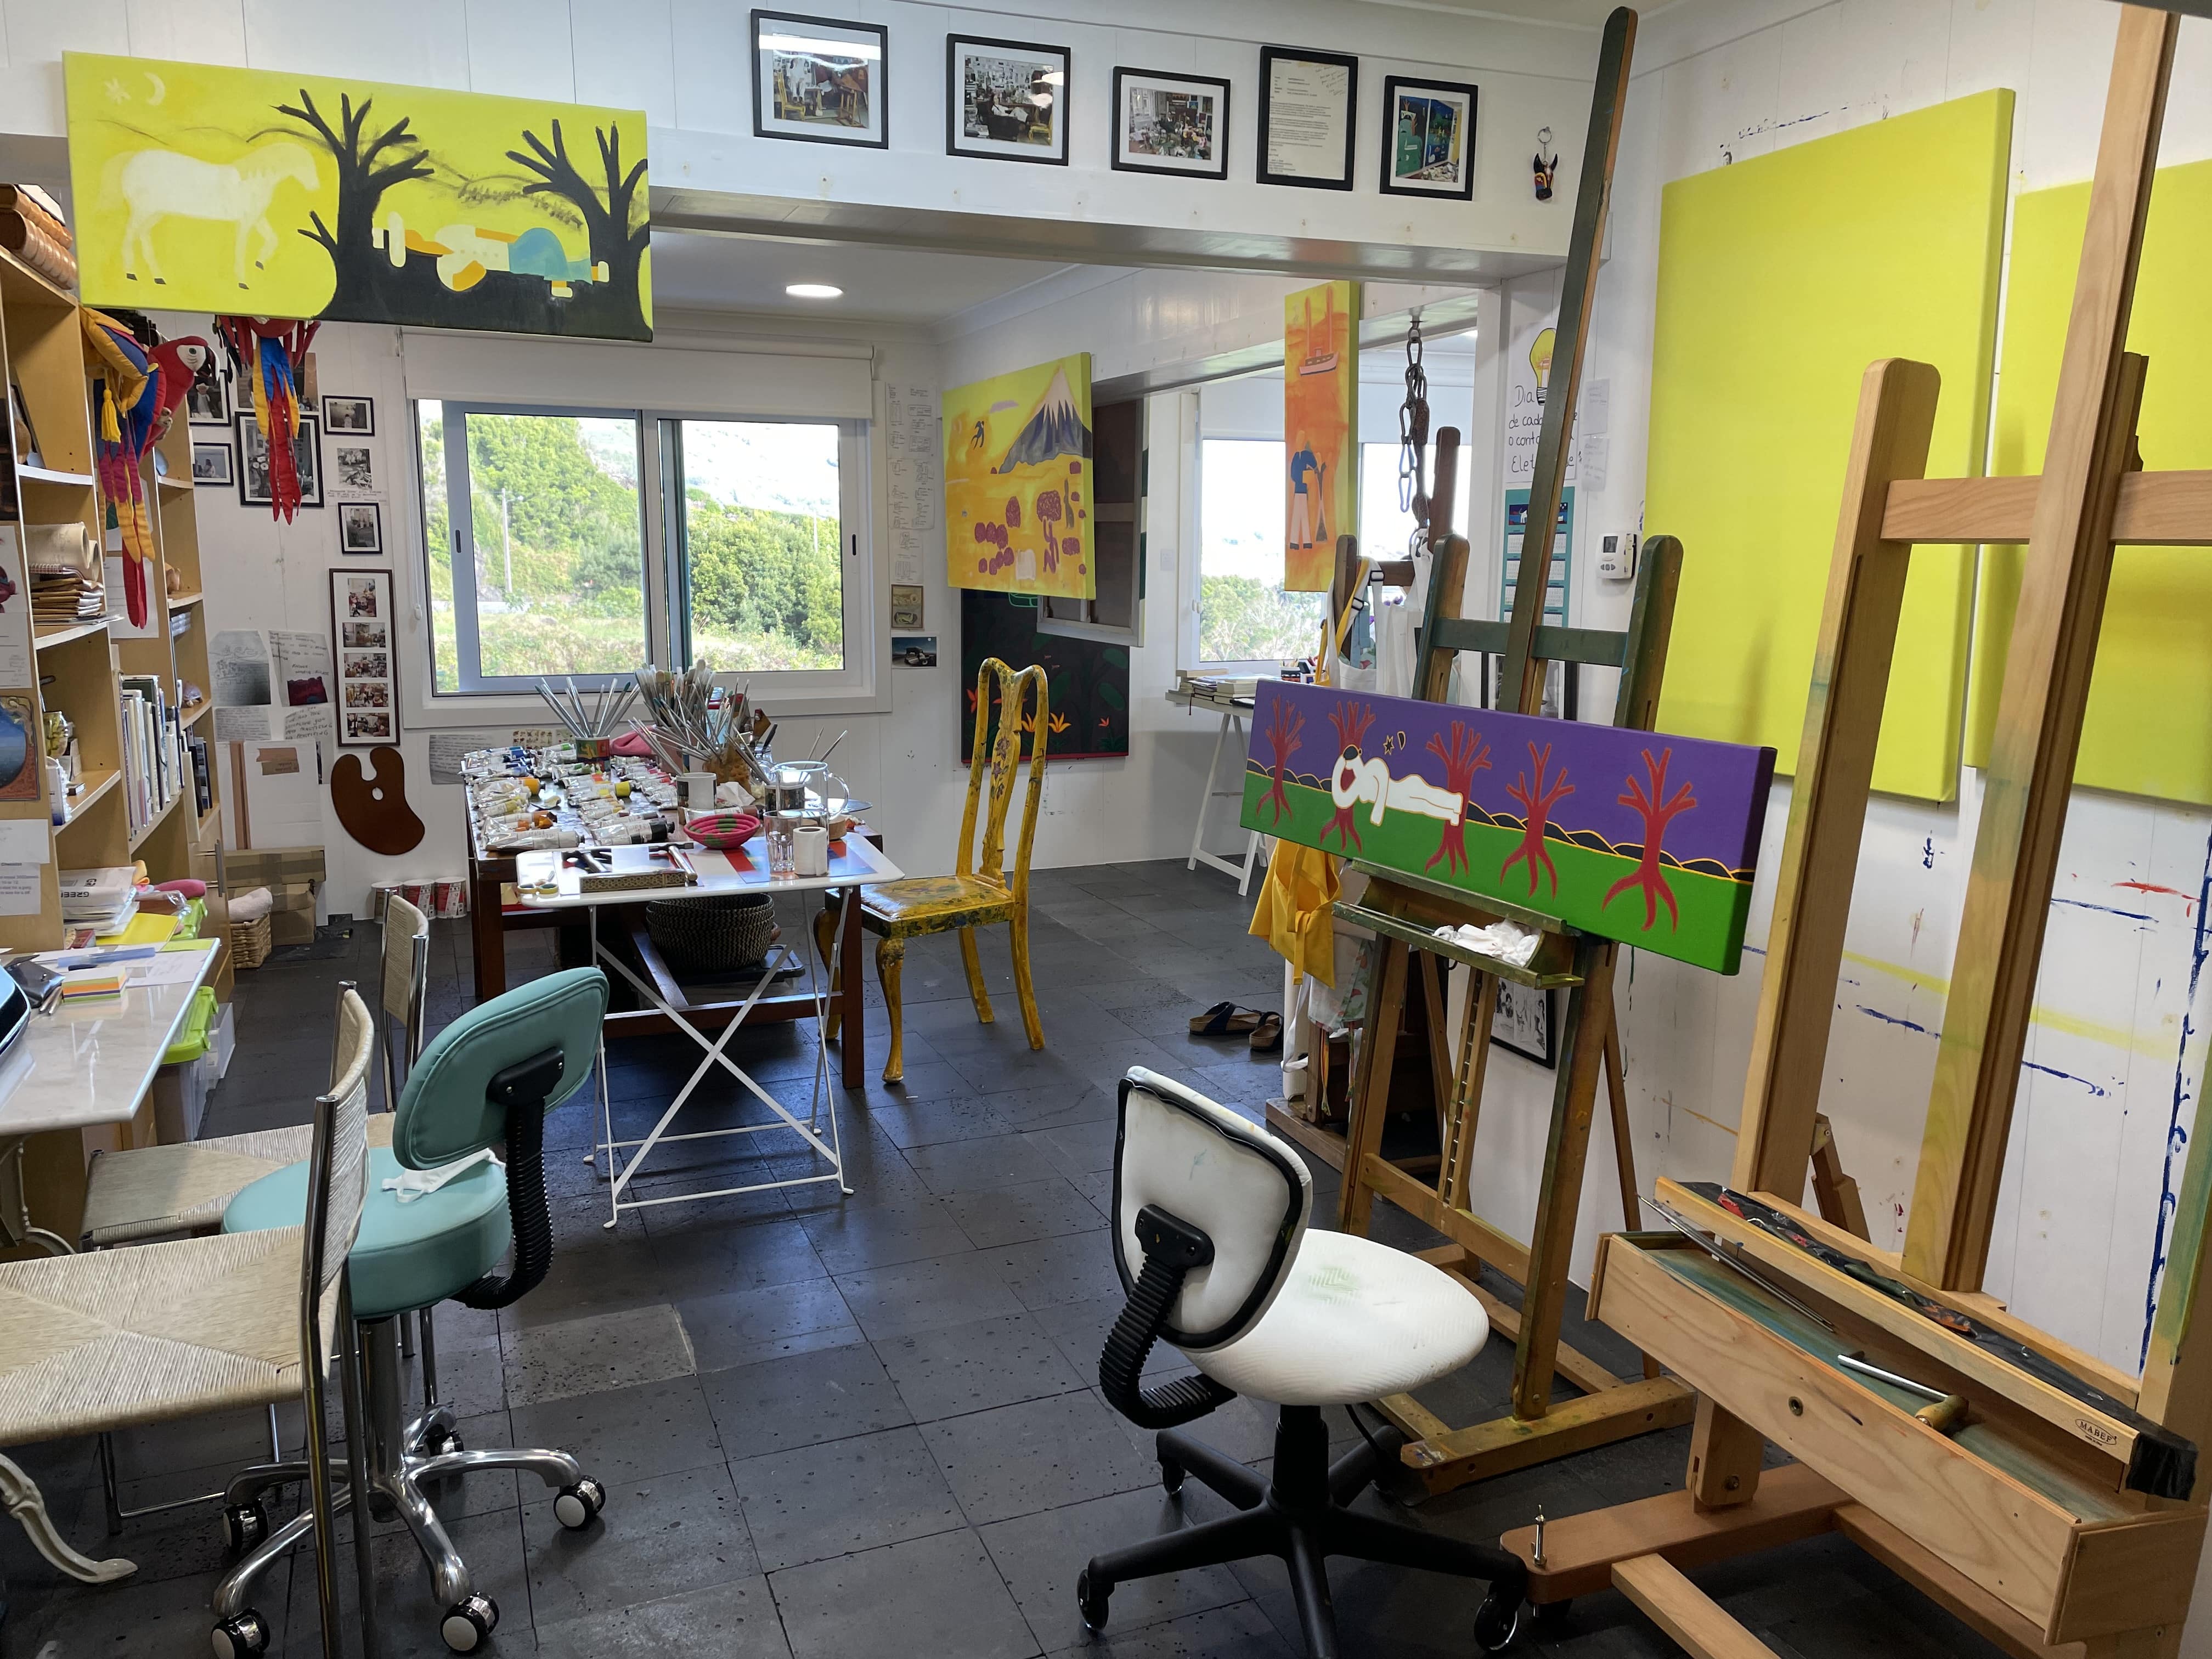 Silveira Cristina Rodriguez Studio at Pico Island, Portugal in 2019-2024